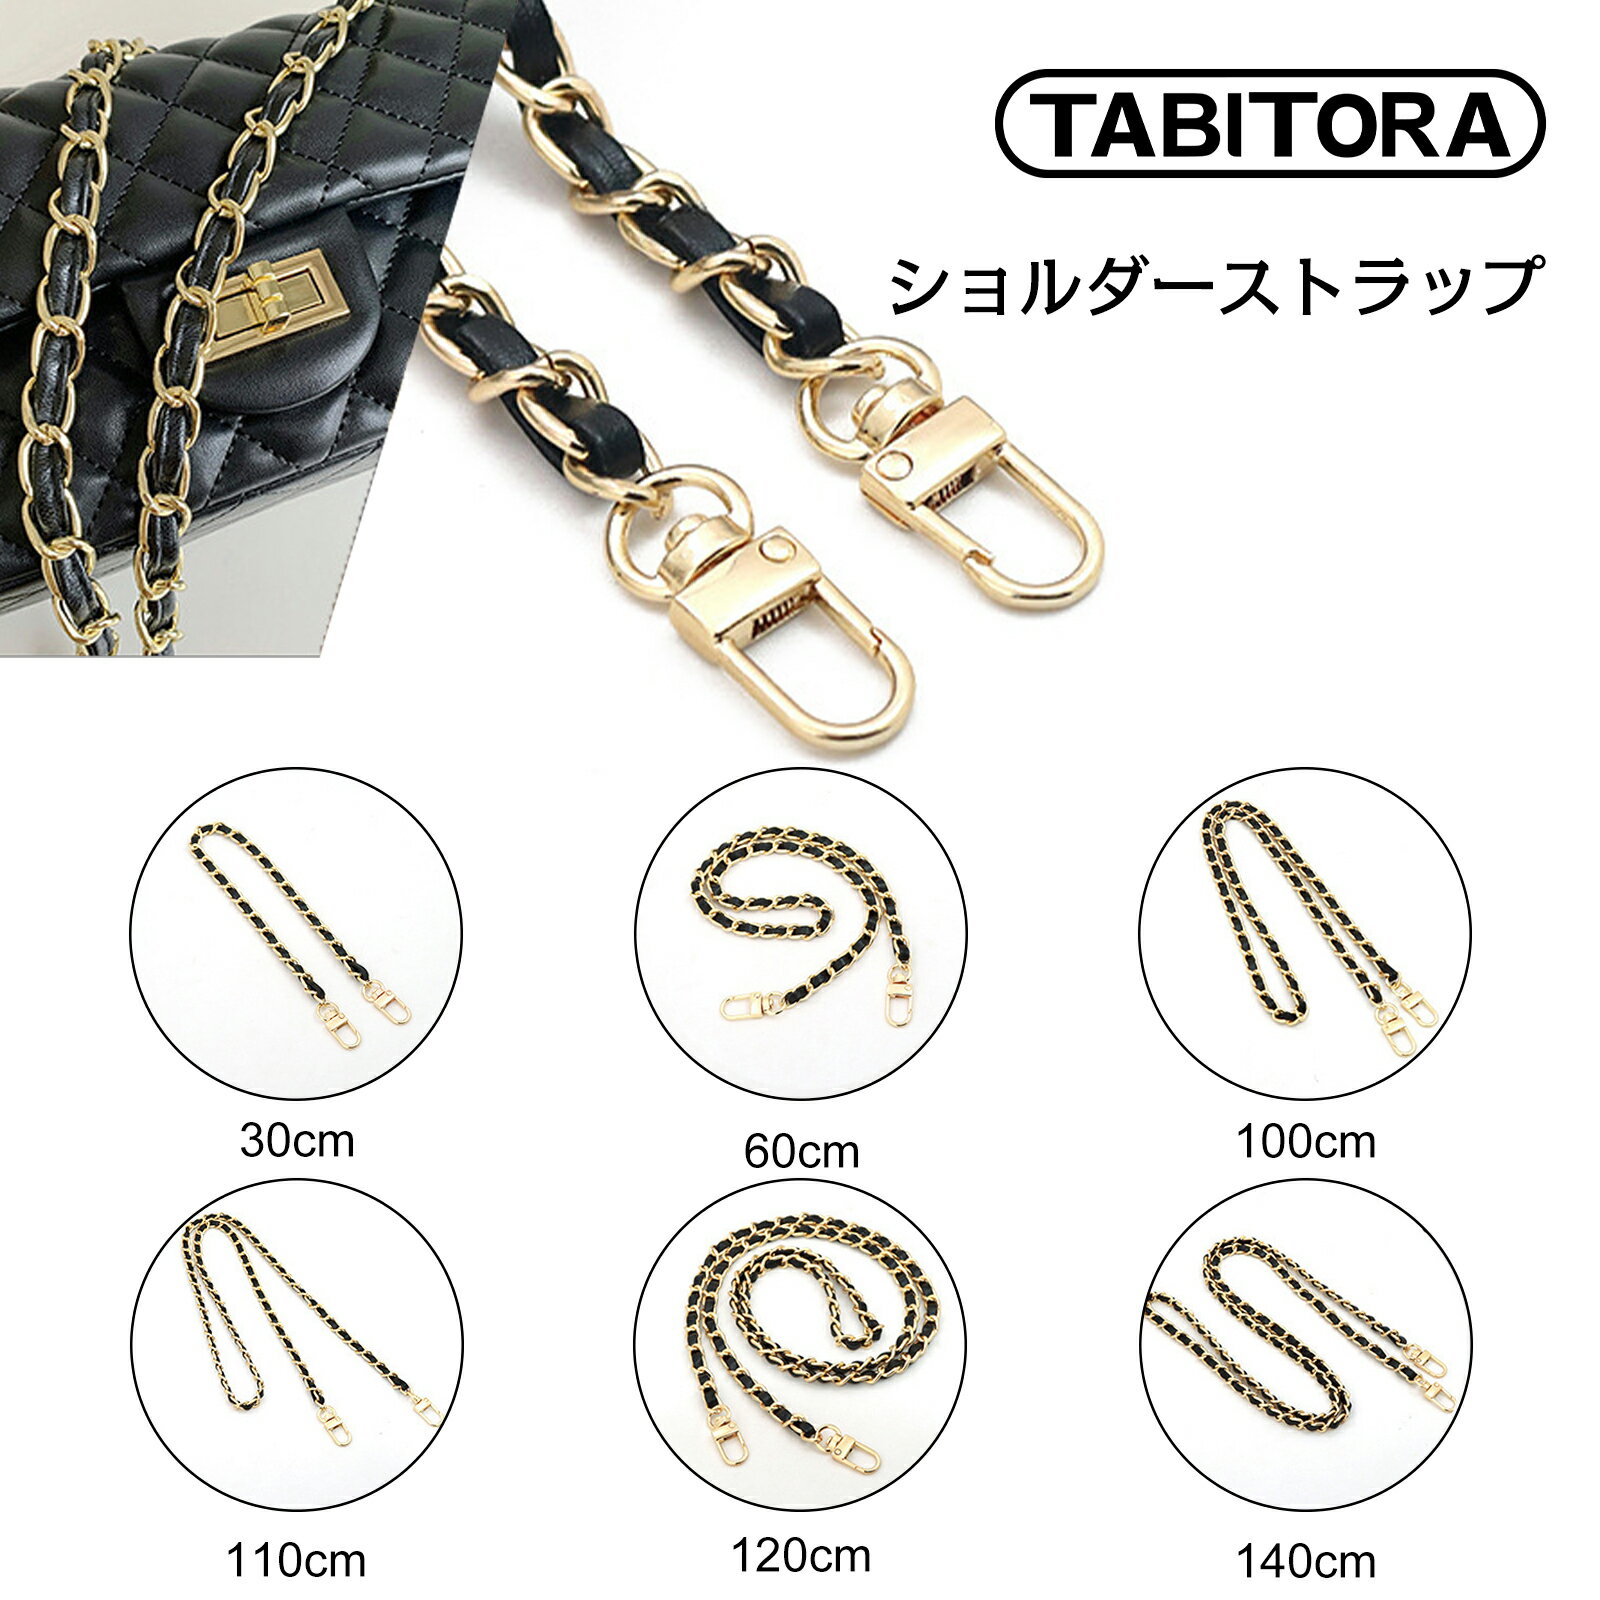 【送料無料】TABITORA(タビトラ) ショルダーストラップ ショルダーベルト 肩紐 バッグ用 単品 交換用 付け替え 単色